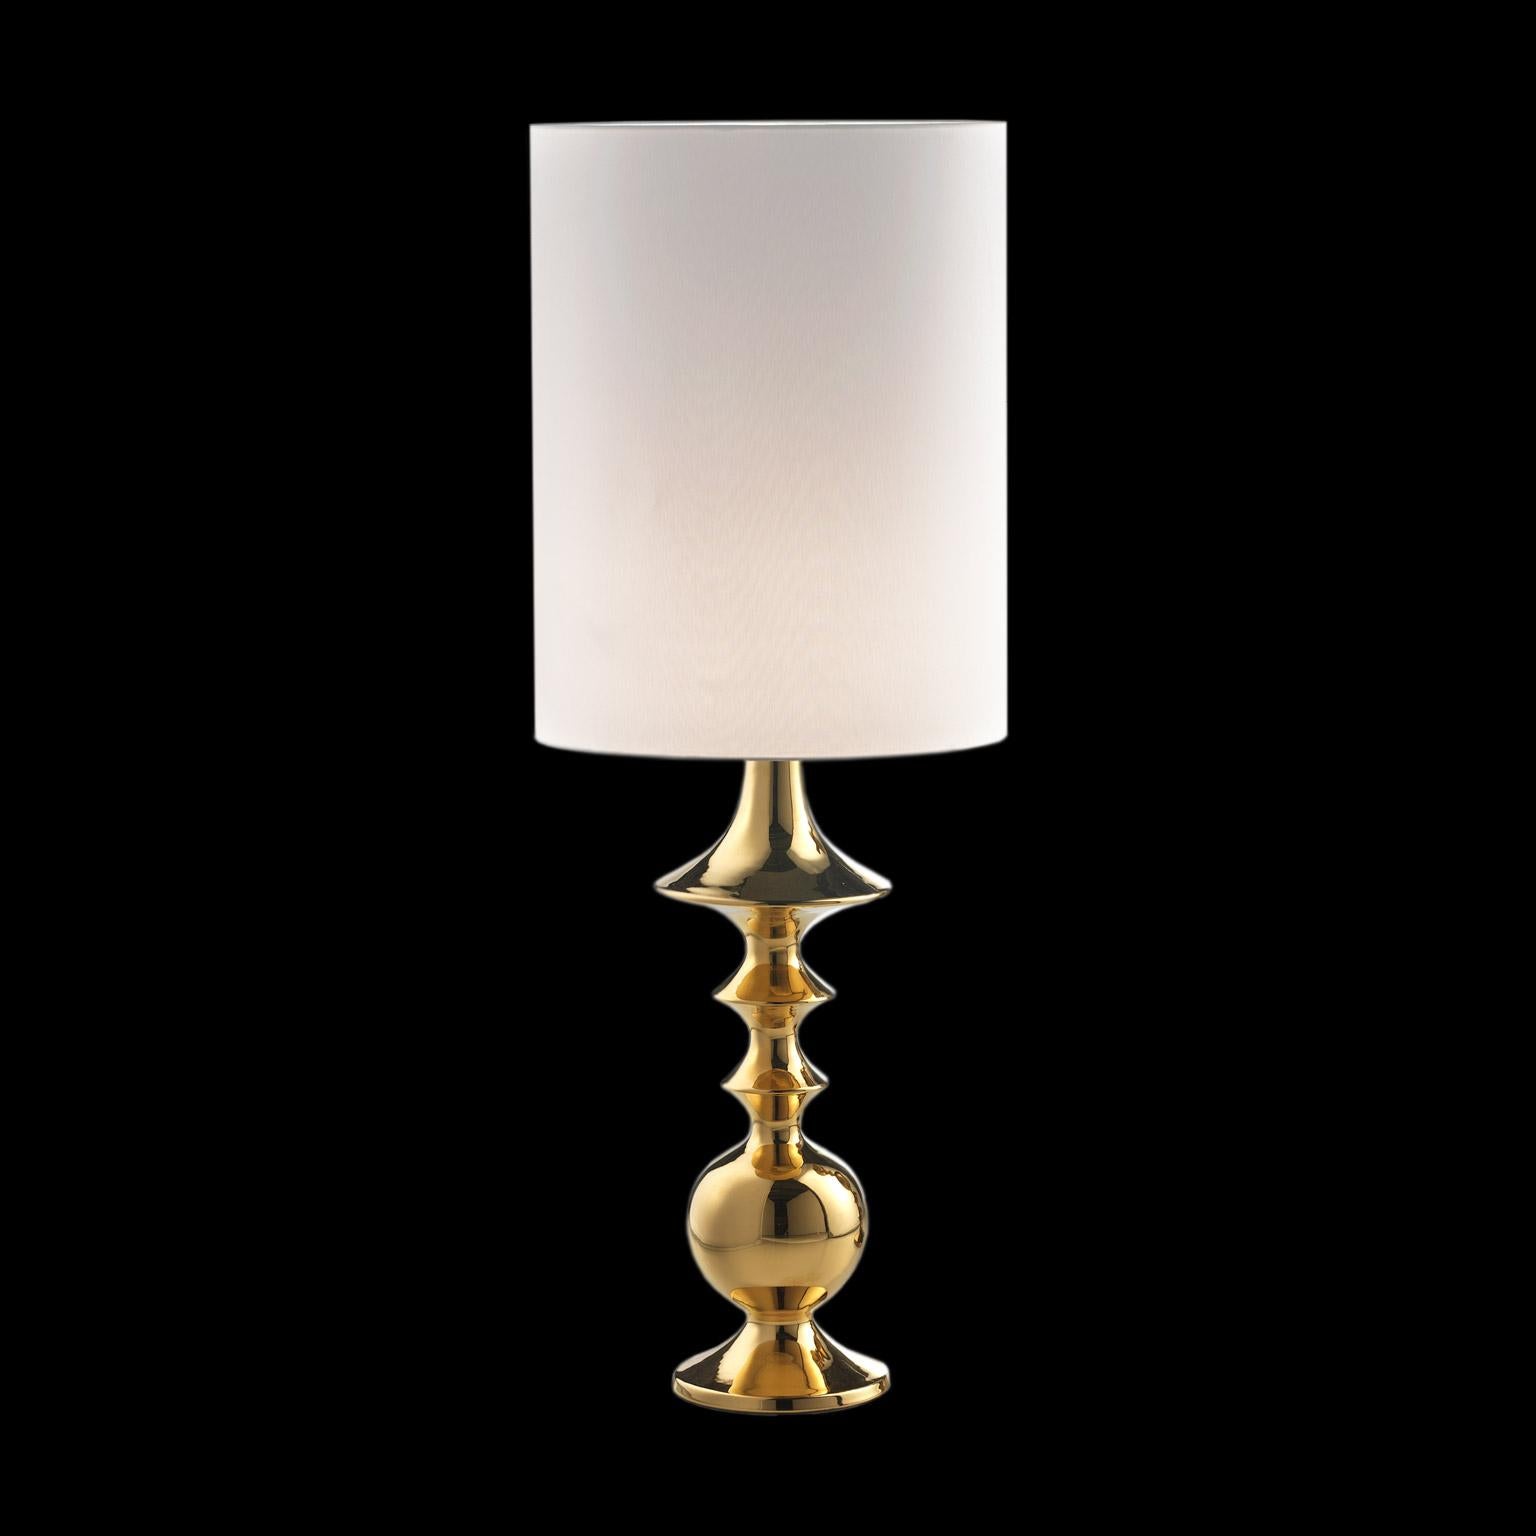 Keramische Lampe BRIX
kabeljau. LB001 
handgefertigt aus 24-karätigem Gold 
mit Lampenschirm aus Baumwolle

maßnahmen: 
H. 90.0 cm.
Dm. 40.0 cm.